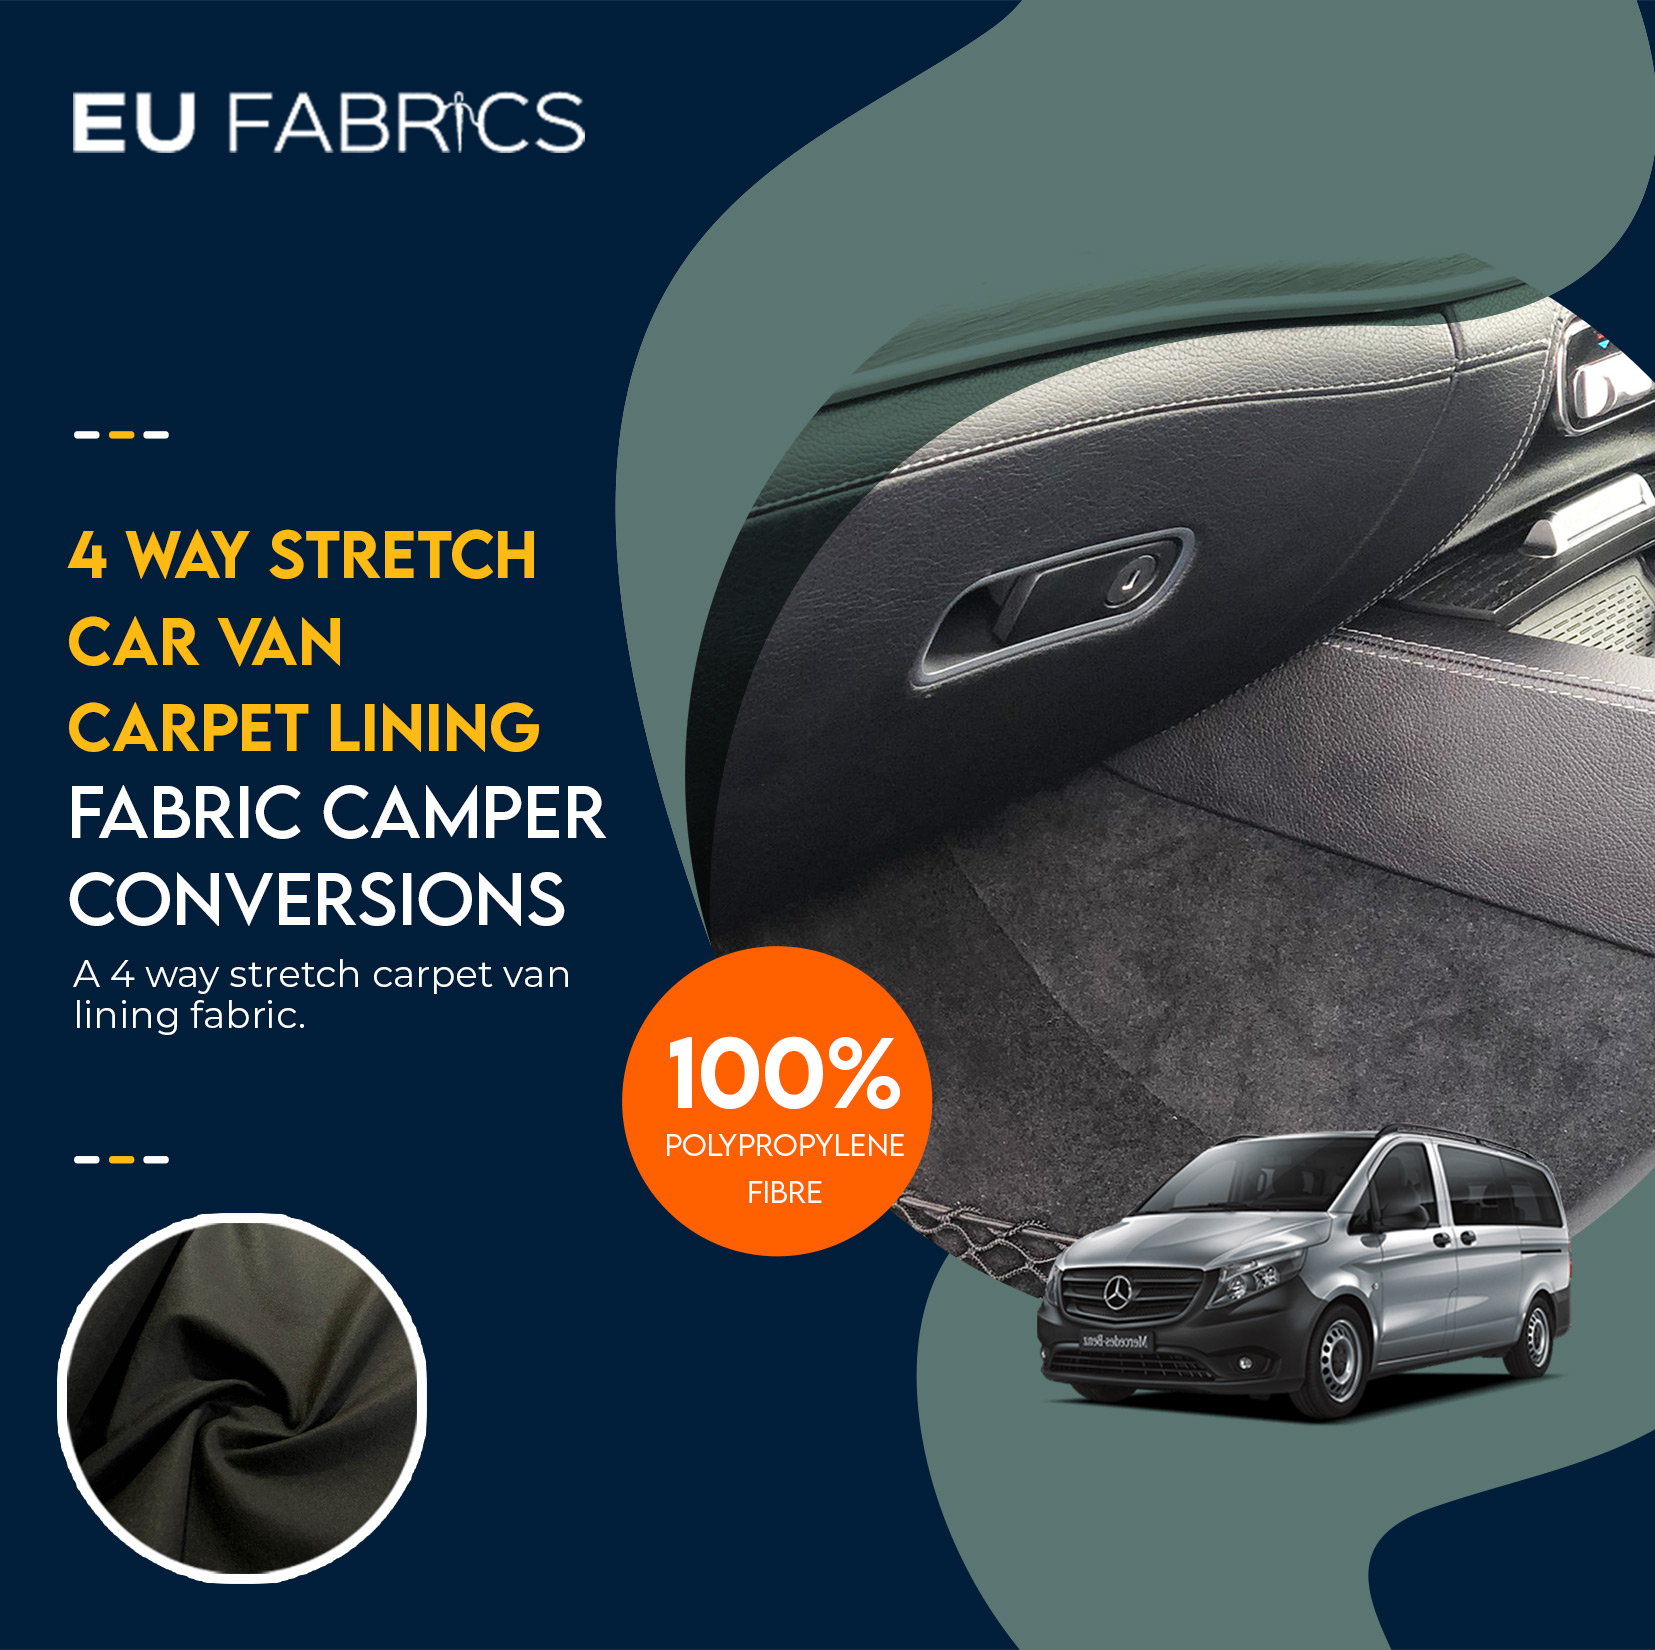 4 Way Stretch Car Van Carpet Lining Fabric Camper Conversions